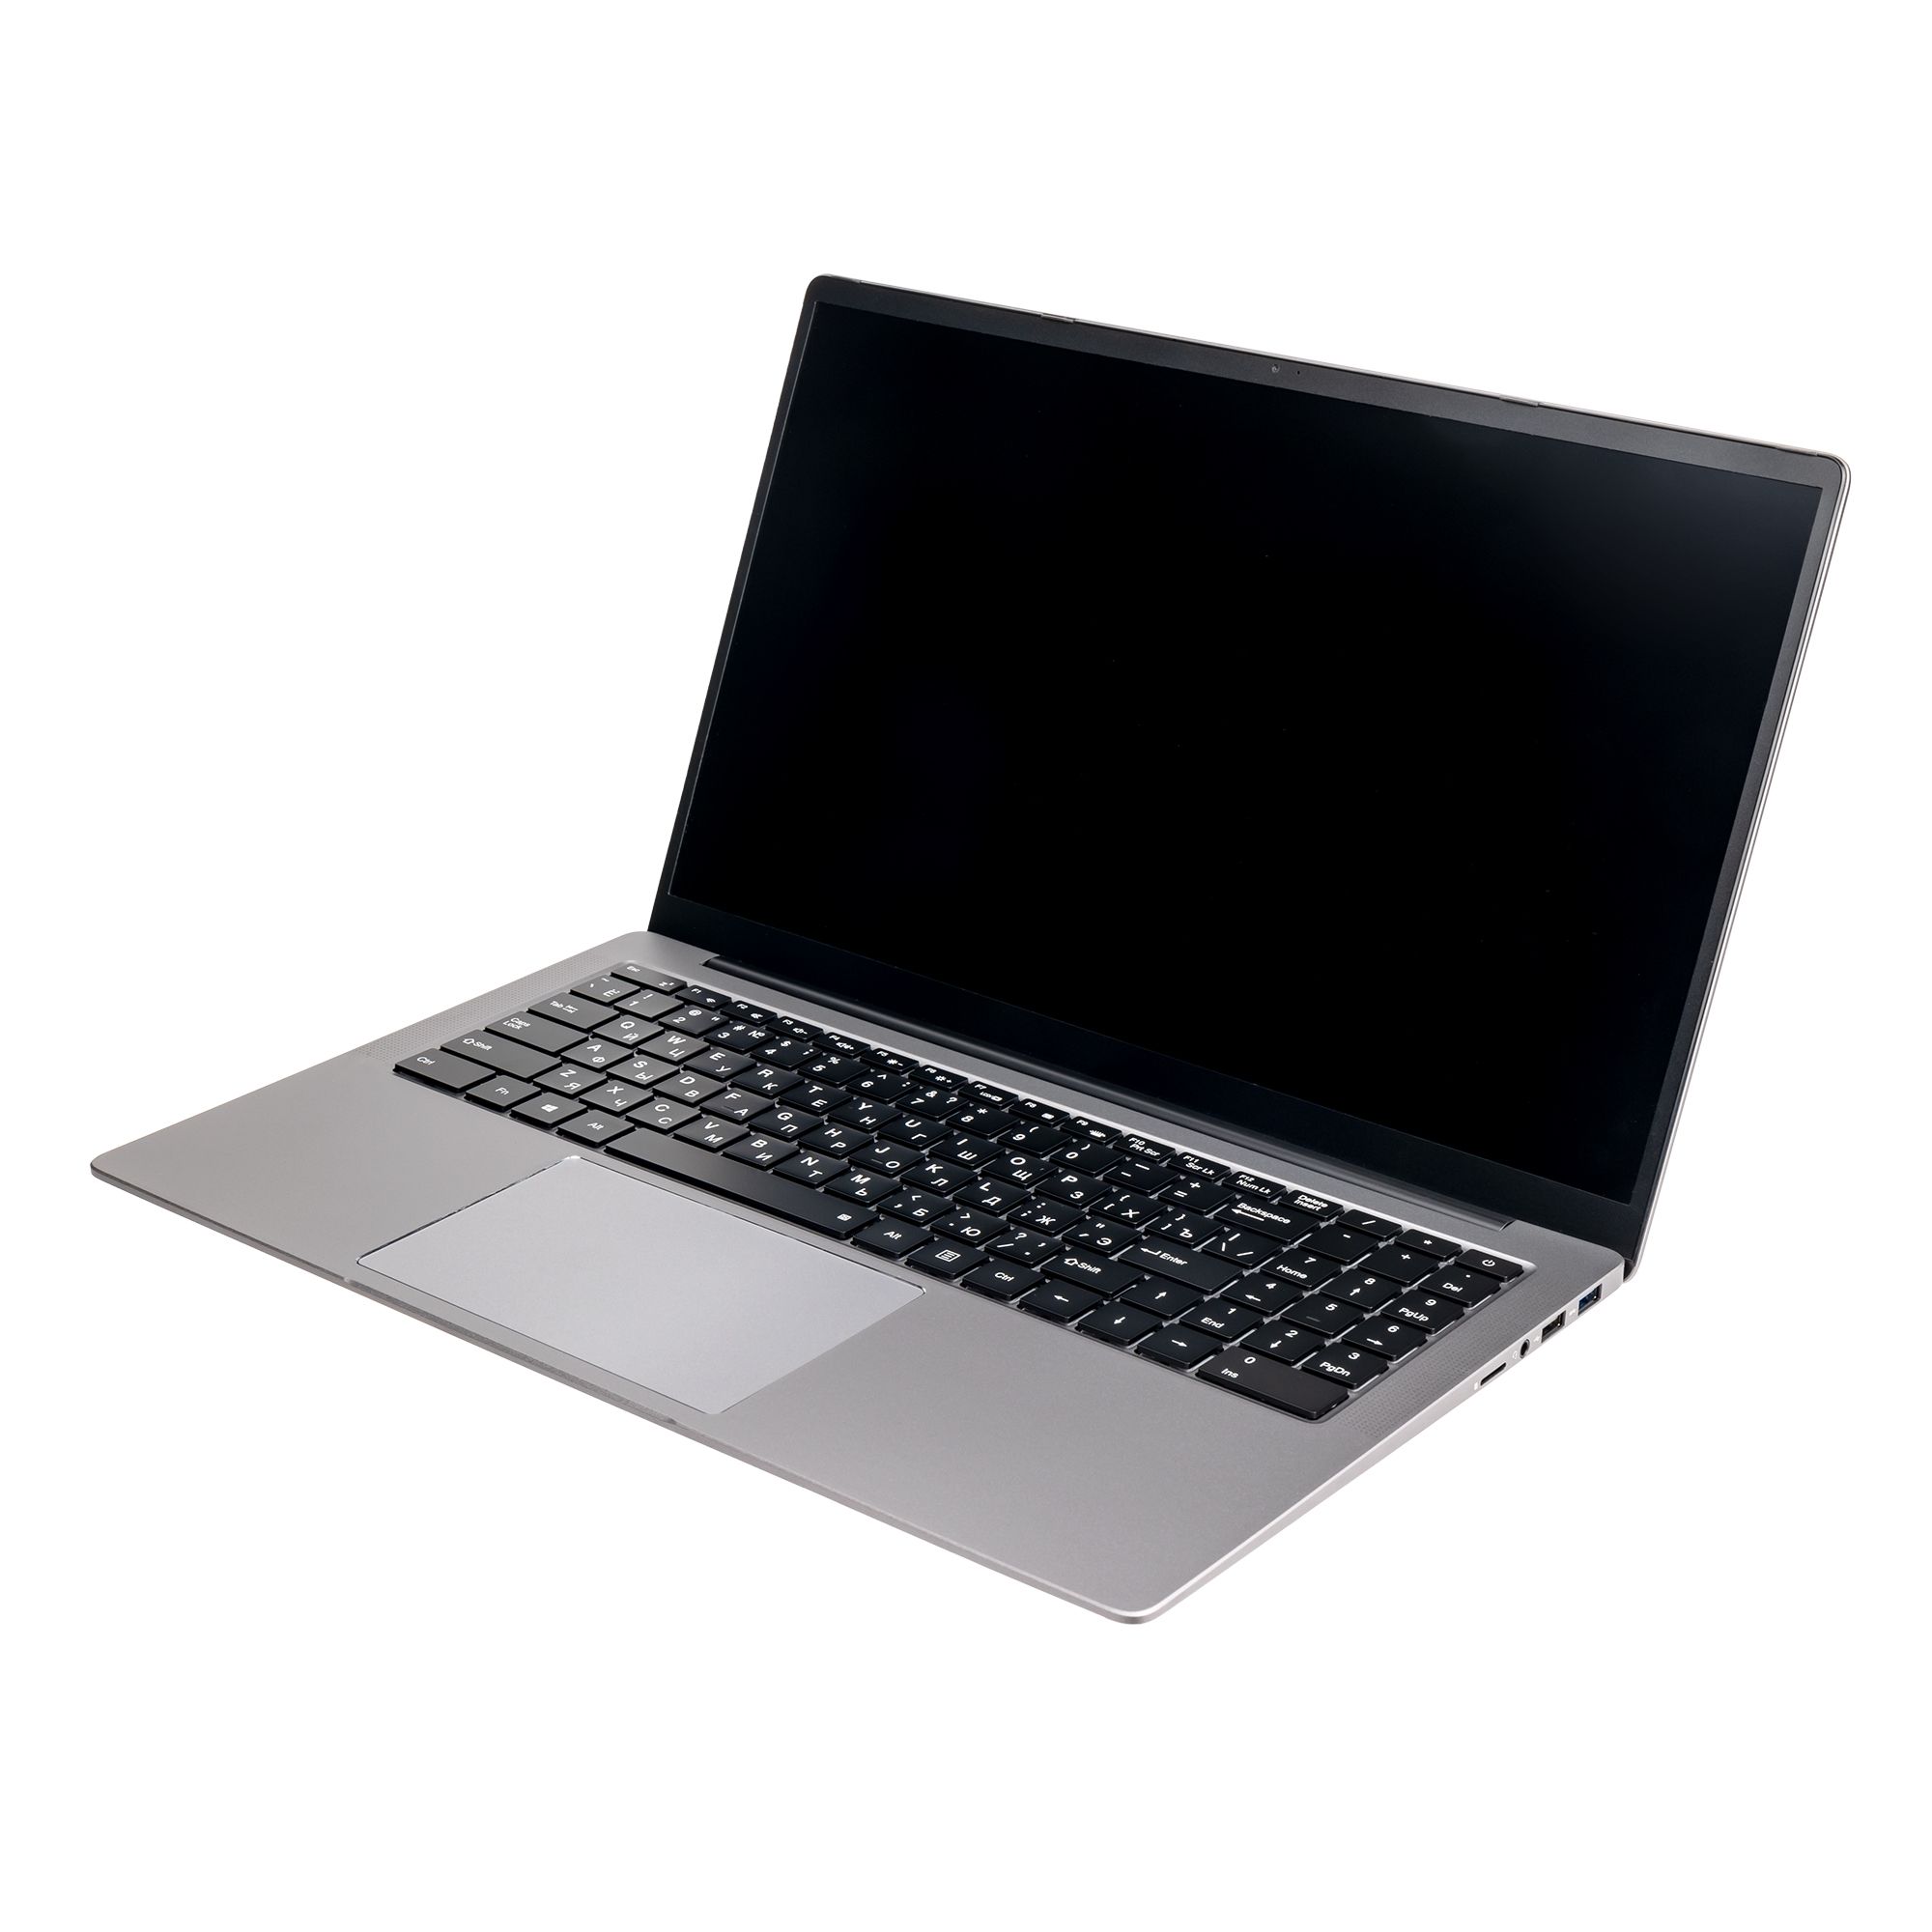 Ноутбук Hiper Expertbook MTL1601 (MTL1601A1235UDS) цена и фото